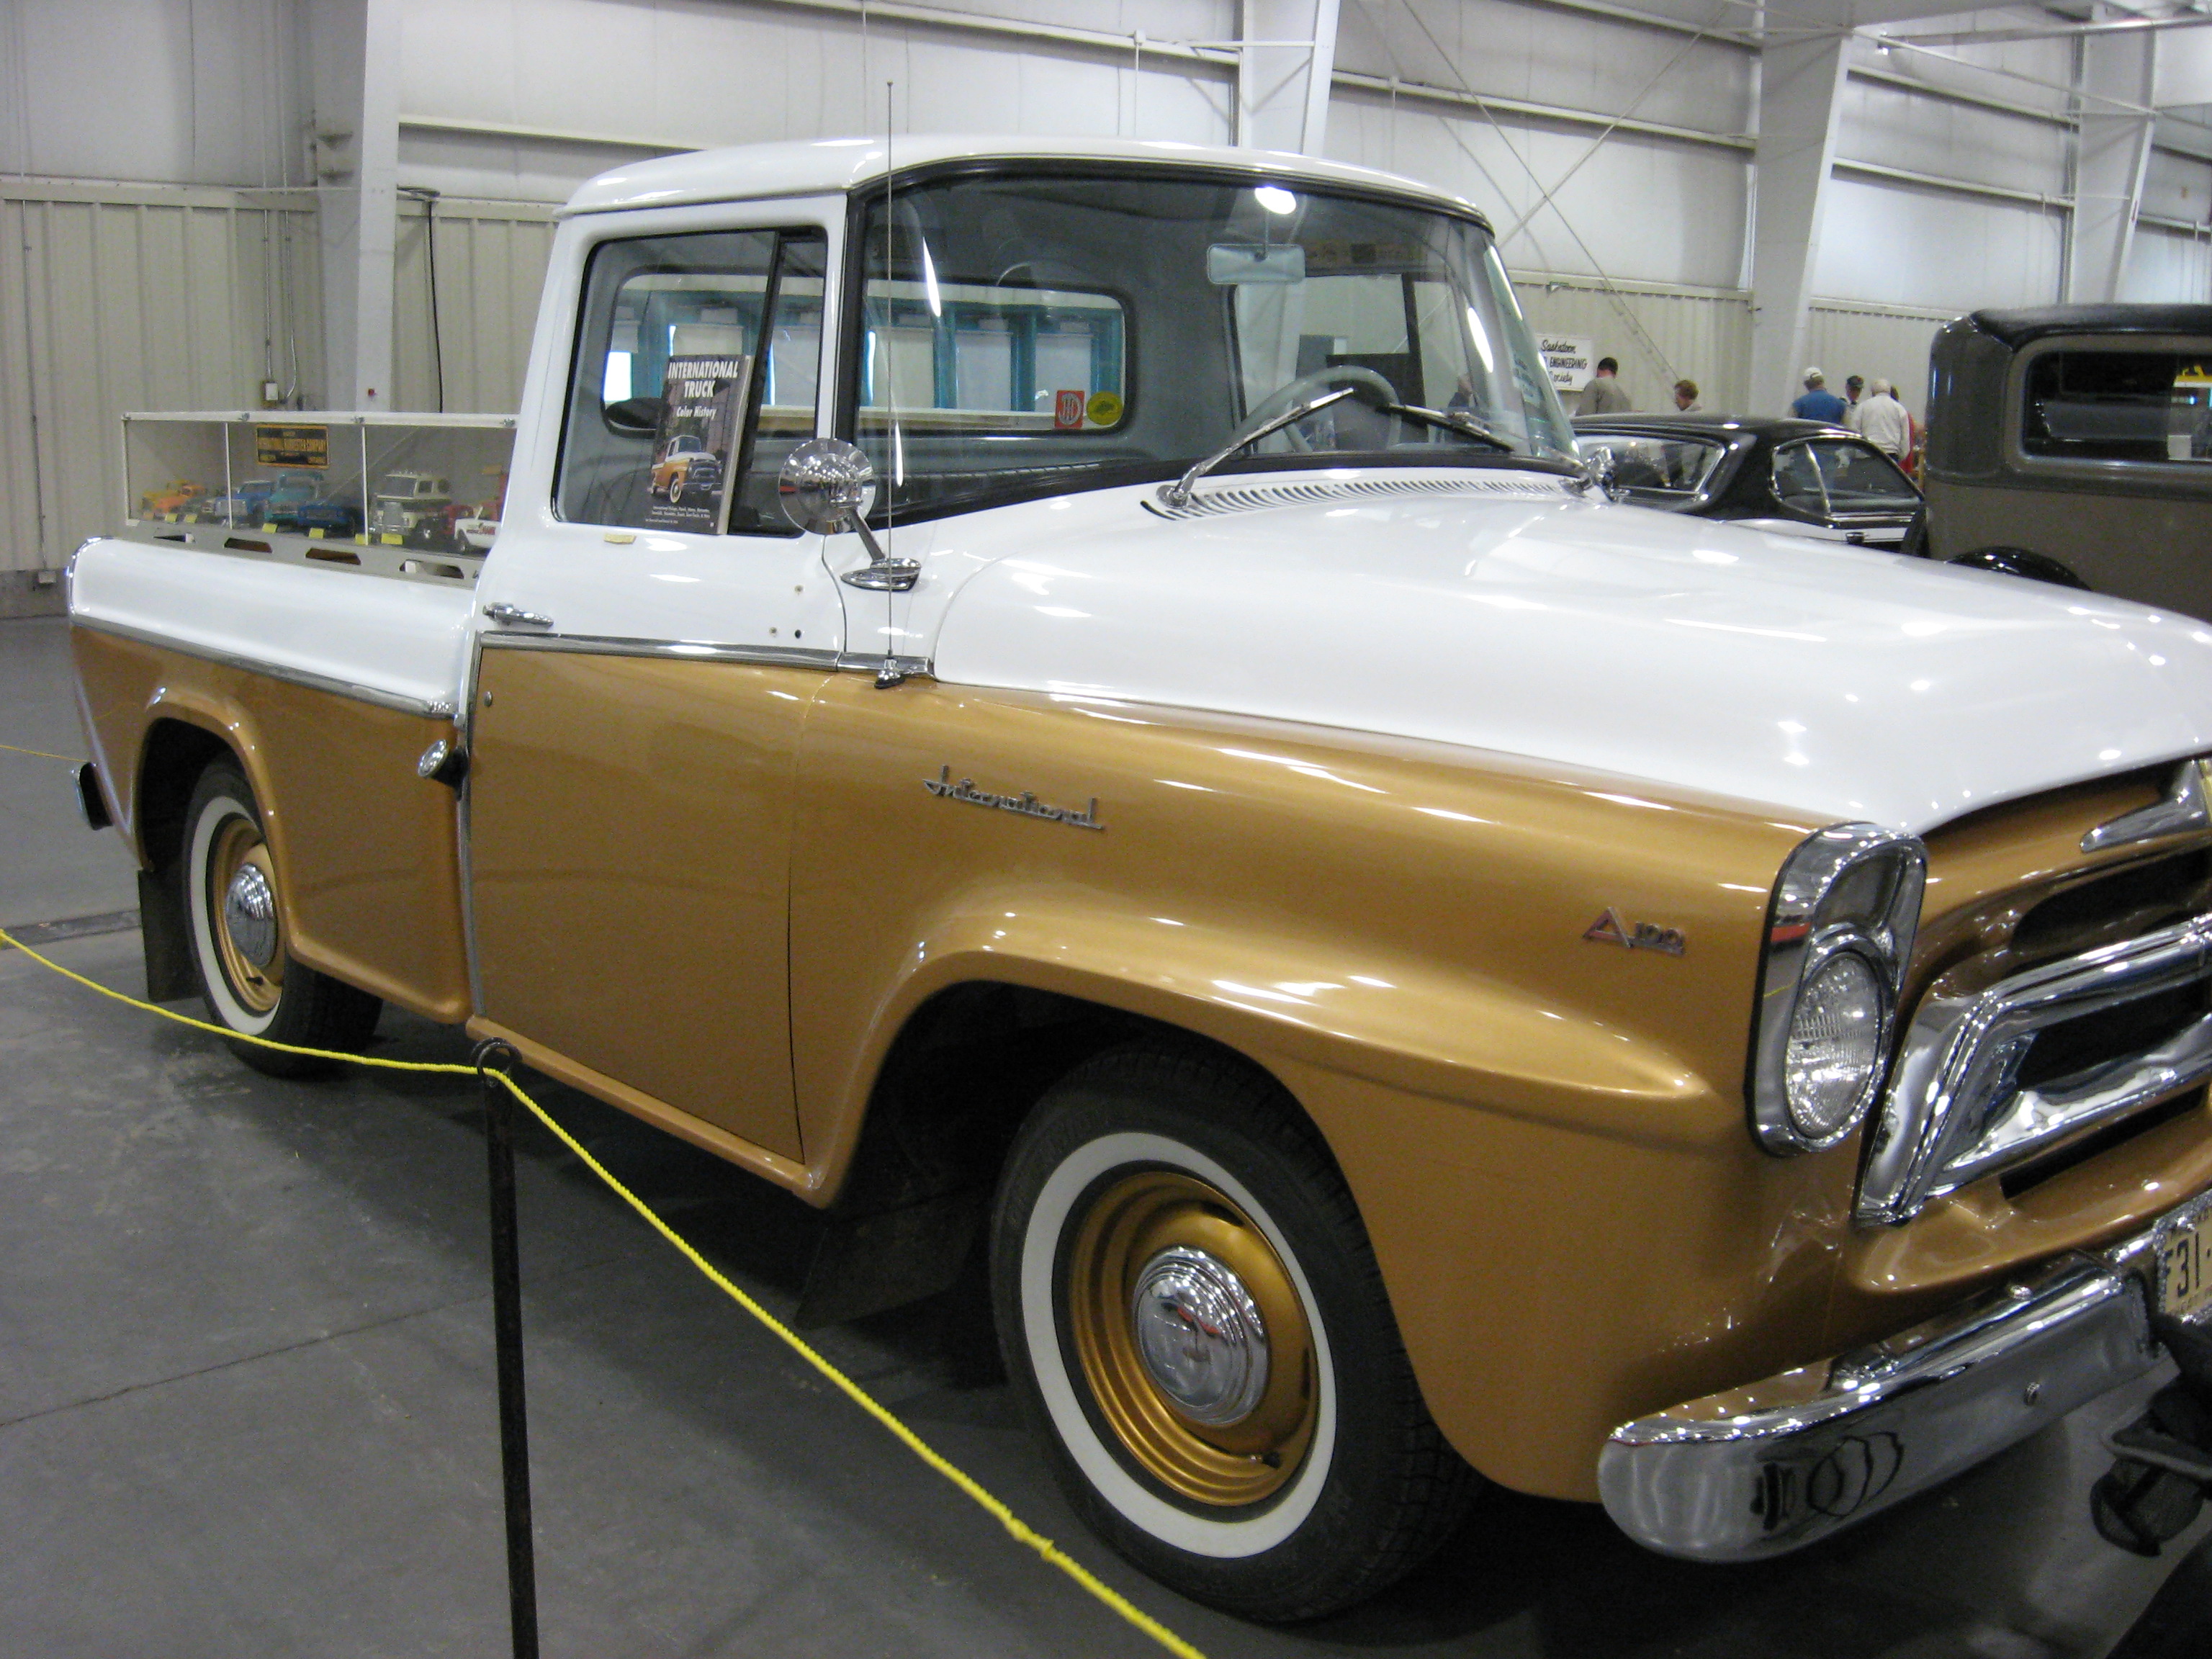 File:1956 international pickup.jpg - Wikimedia Commons